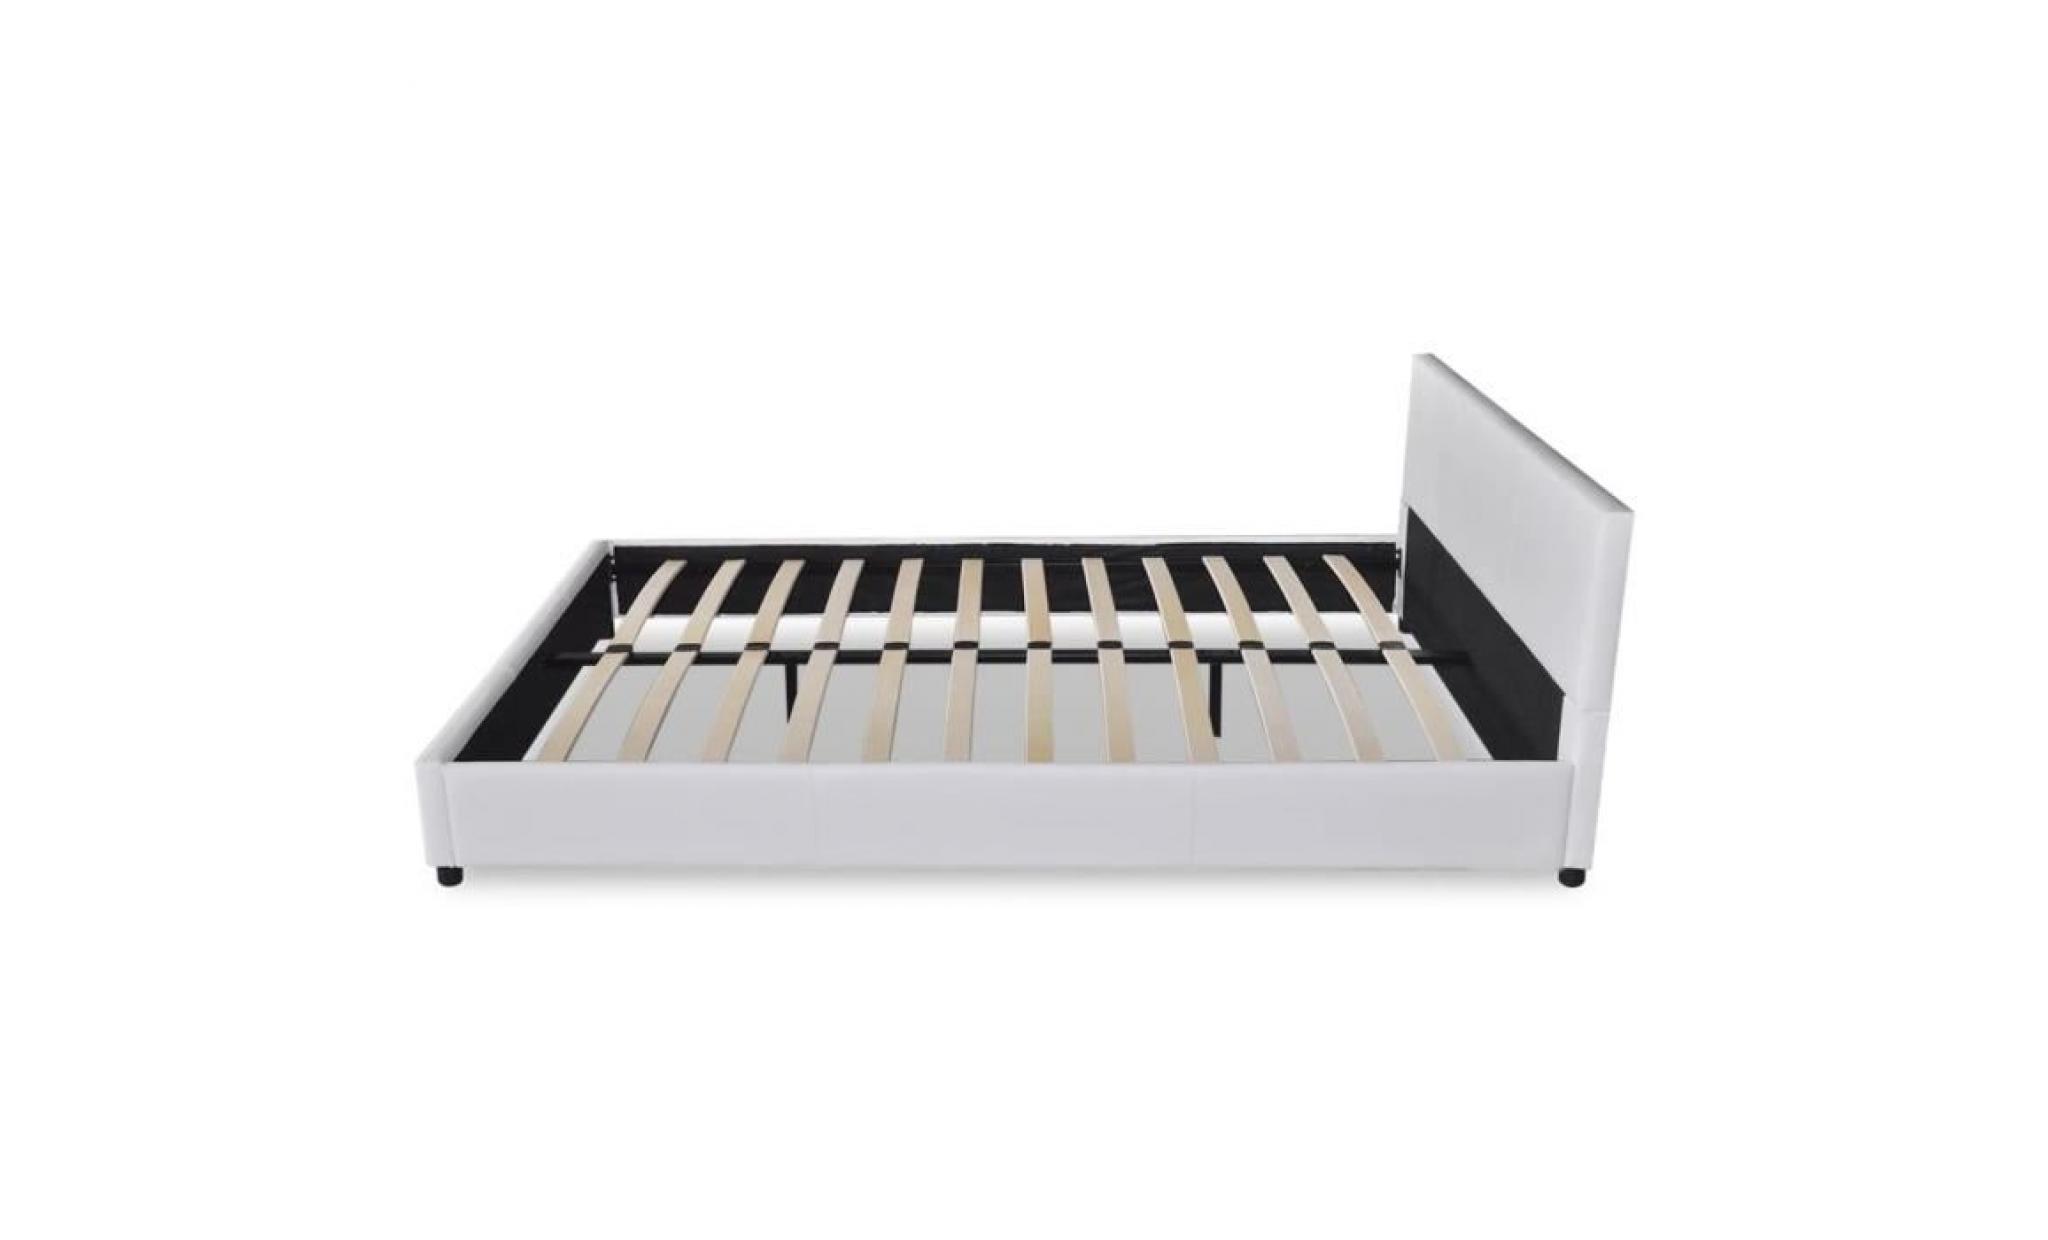 lit 140 x 200 cm structure de lit lit adulte lit enfant lit contemporain scandinave cuir artificiel blanc pas cher